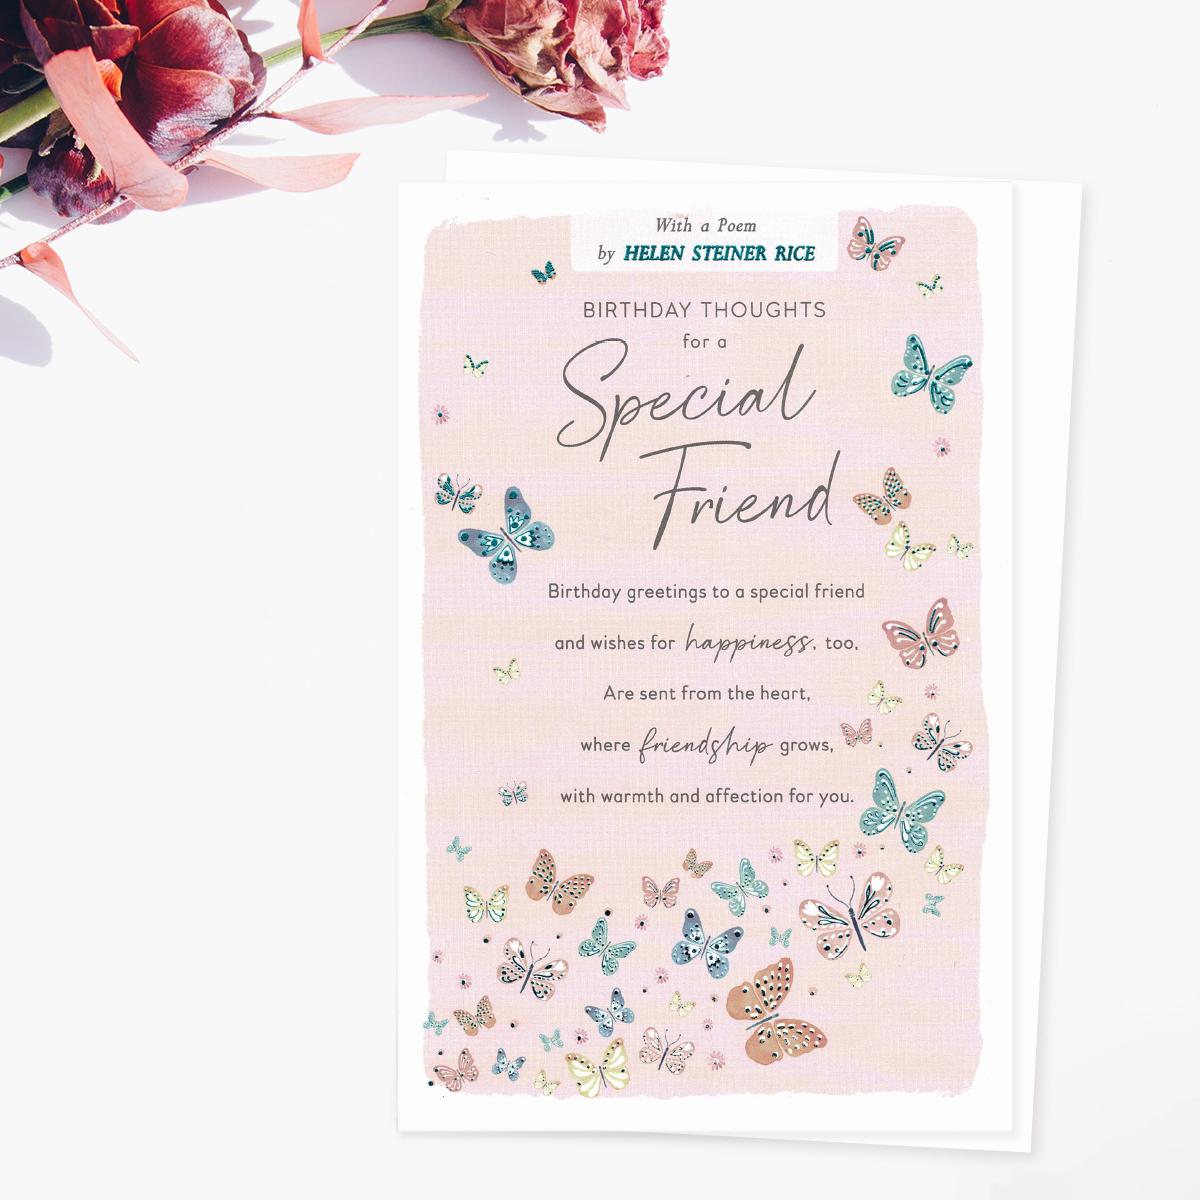 Helen Steiner Rice - Special Friend Birthday Card Front Image